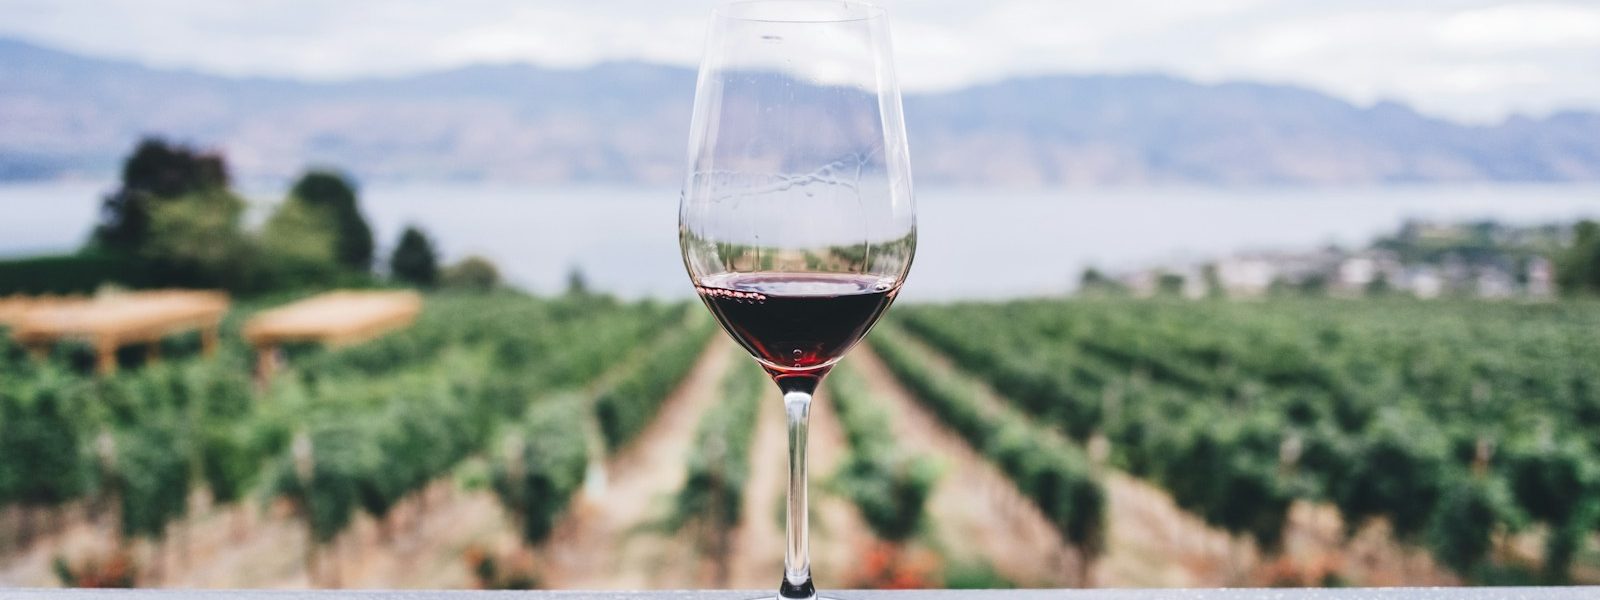 erp vin pour la gestion viticole